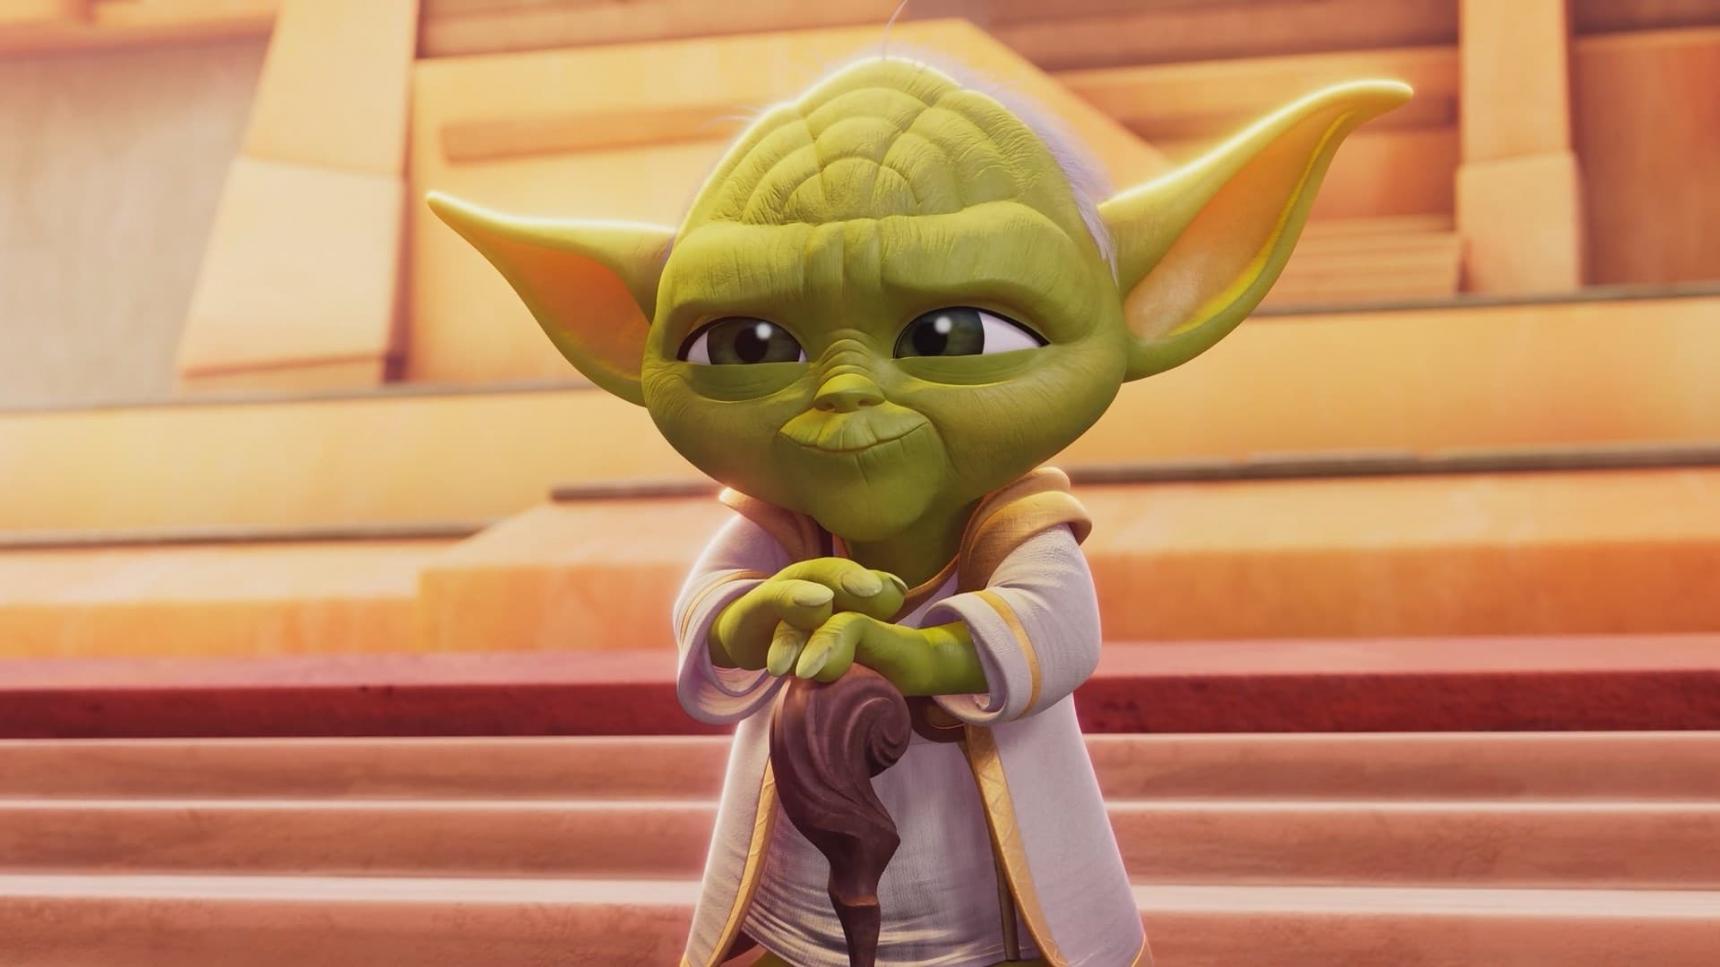 Poster del episodio 1 de Star Wars: Las aventuras de los jóvenes Jedi online